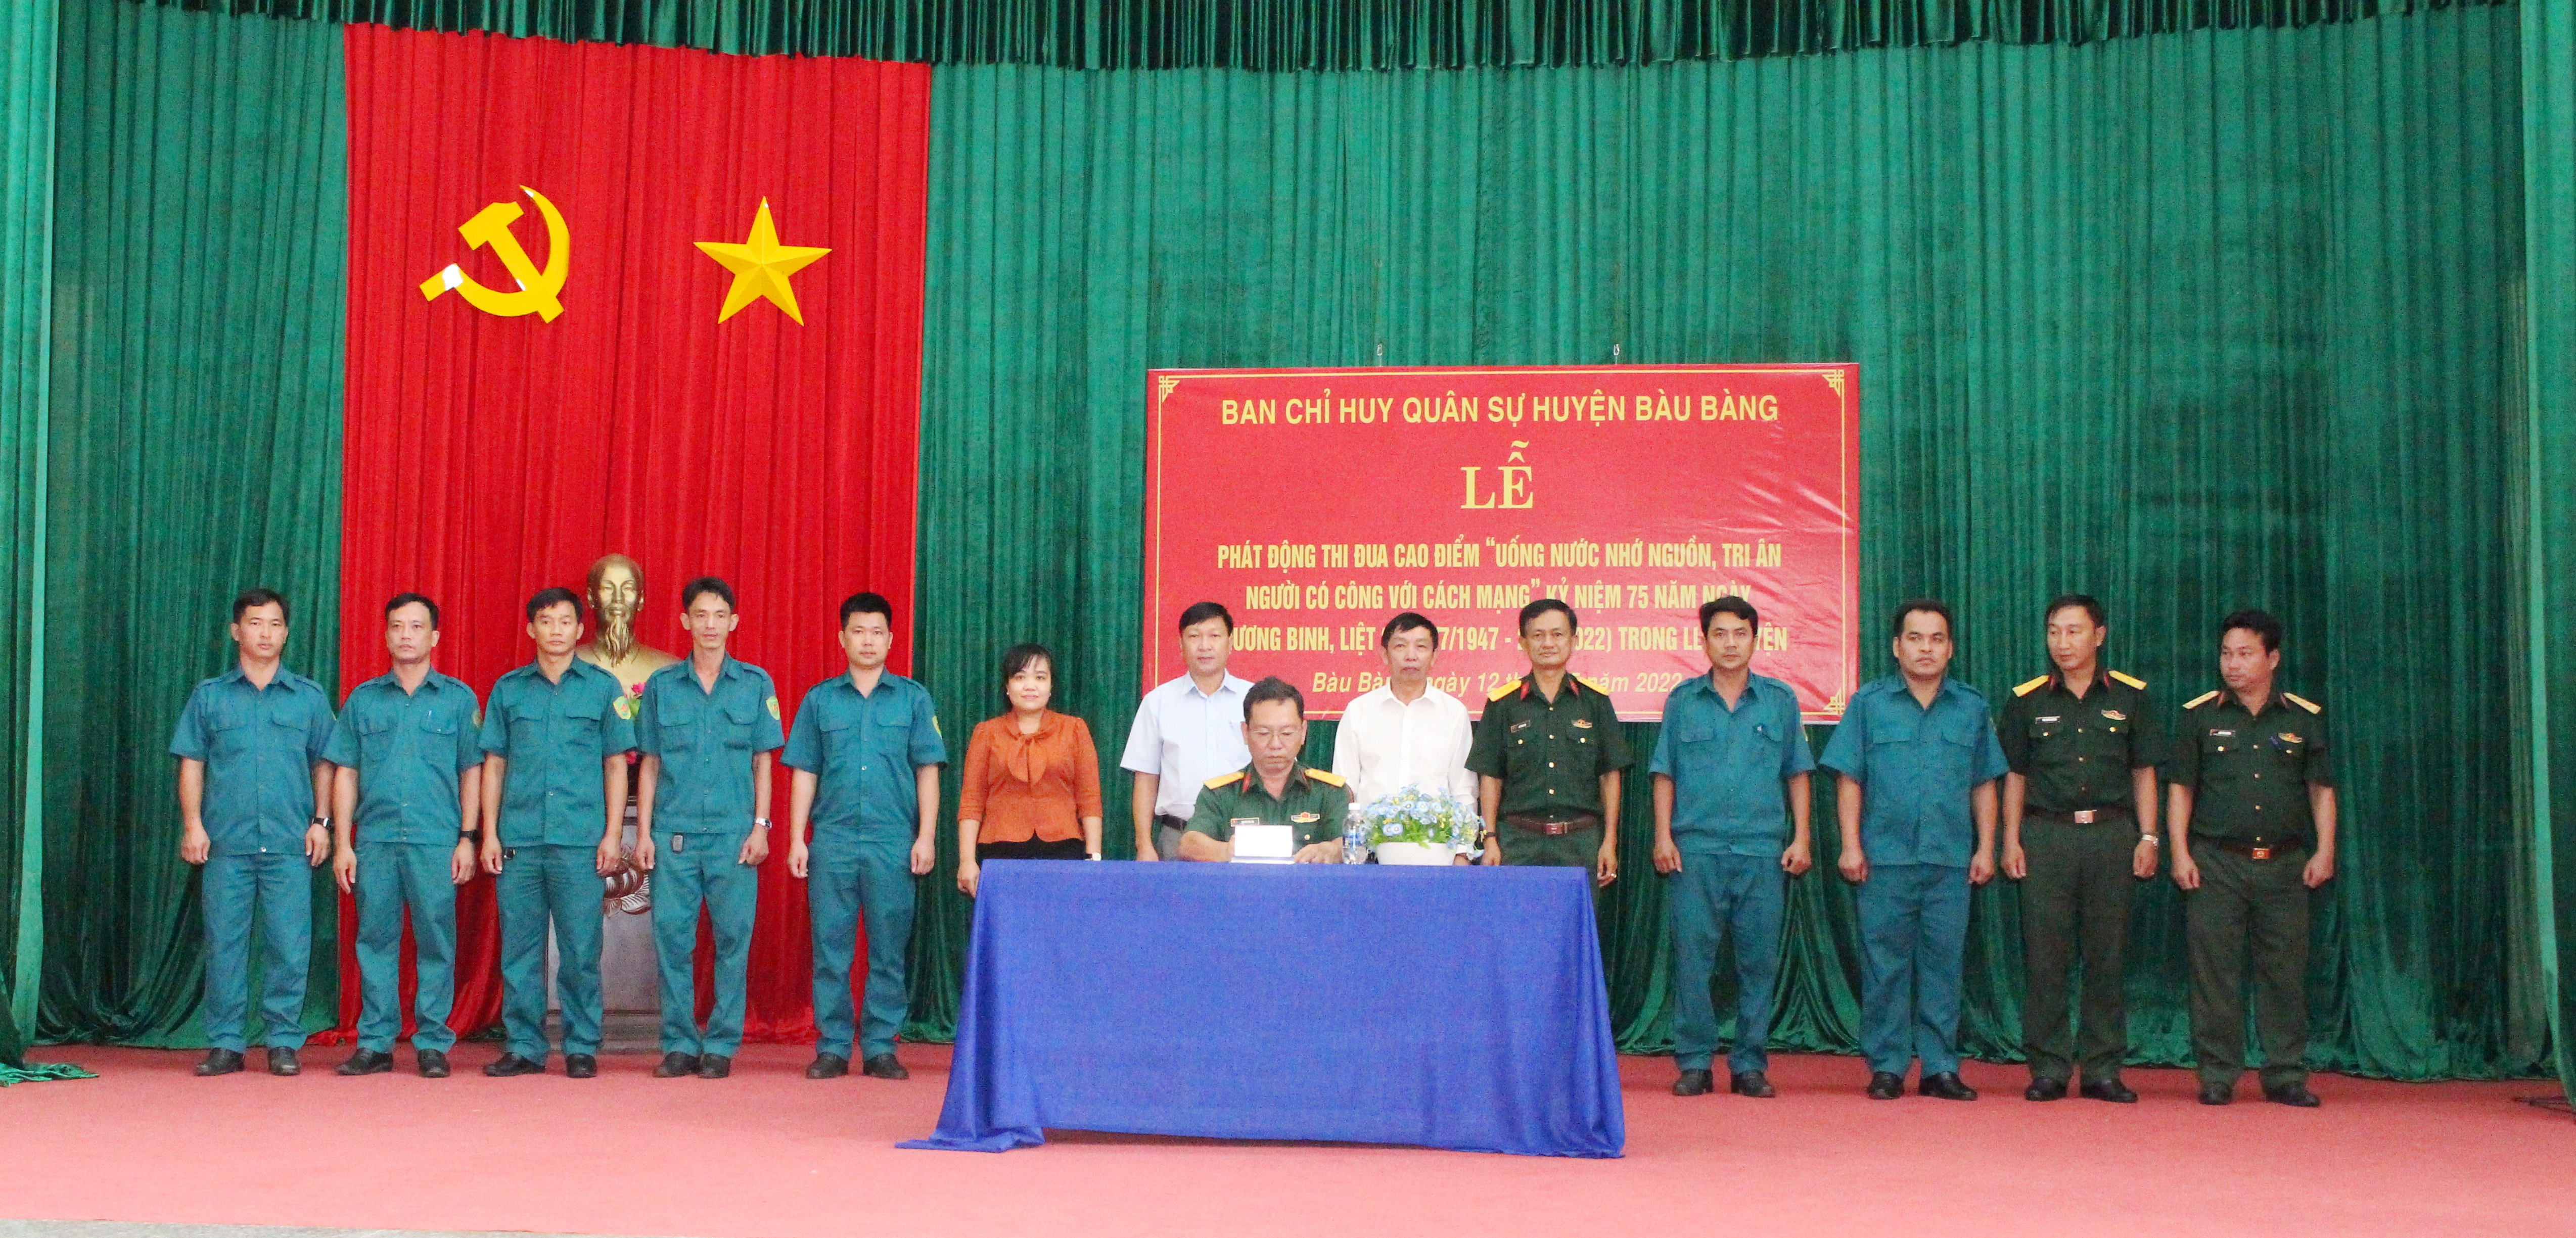 Thượng tá Nguyễn Văn Trị - Chính Trị viên BCH Quân sự huyện phê duyệt ký kết giao ước thi đua của các đơn vị tham gia phong trào.